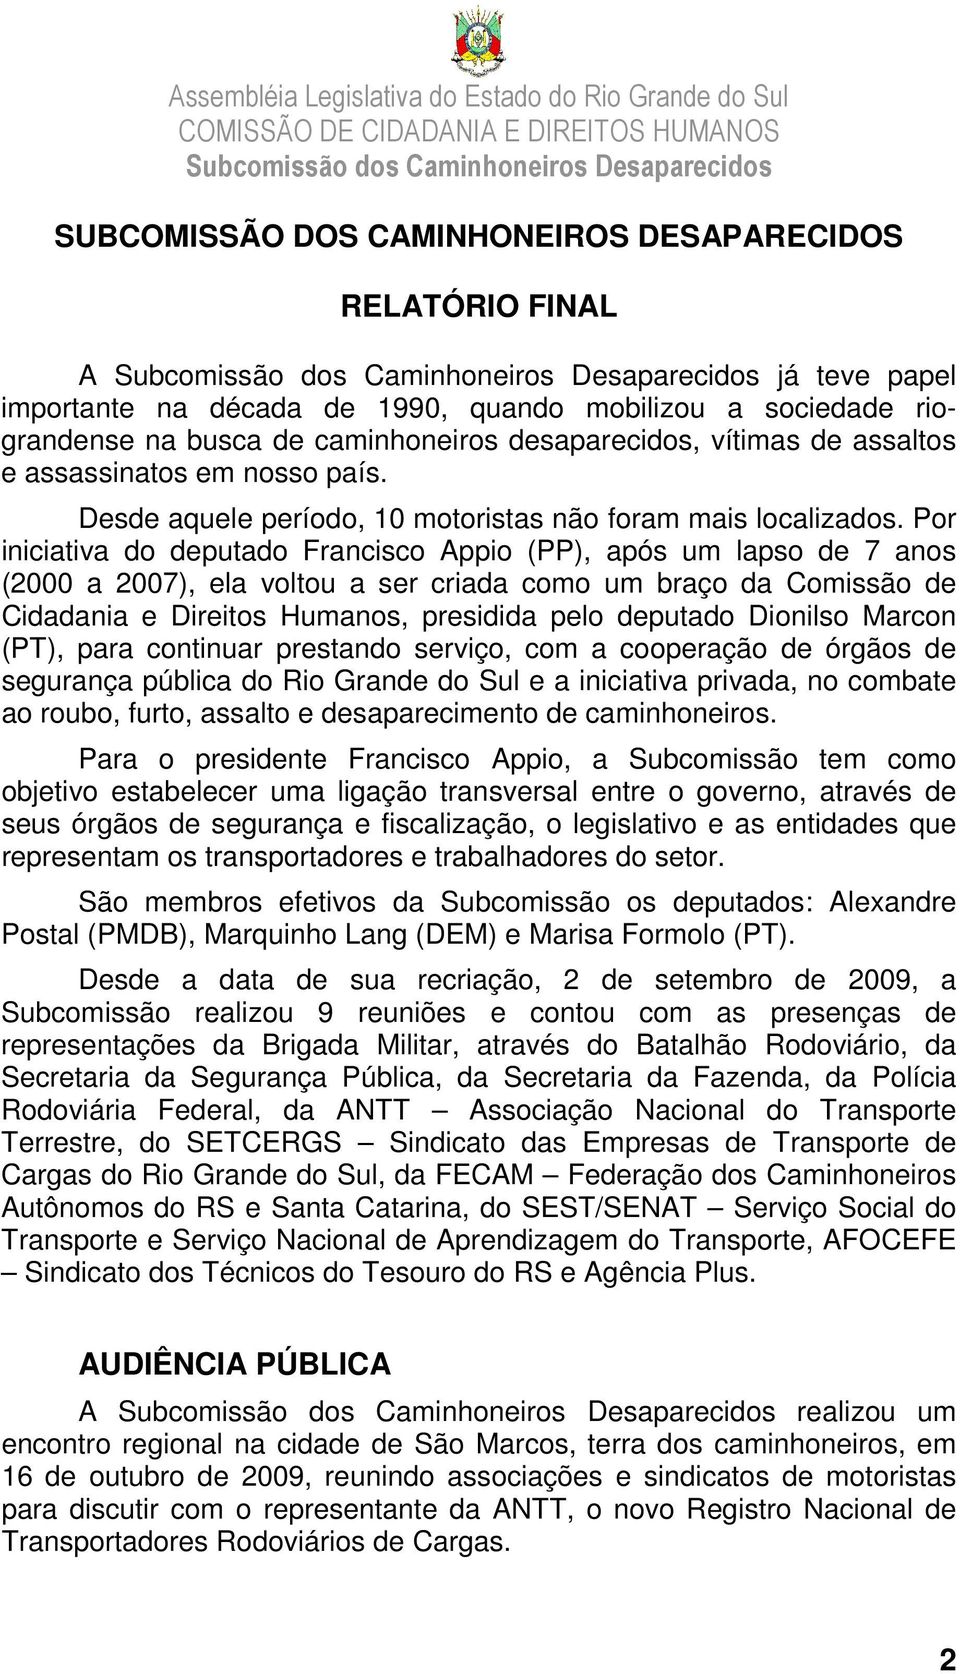 Por iniciativa do deputado Francisco Appio (PP), após um lapso de 7 anos (2000 a 2007), ela voltou a ser criada como um braço da Comissão de Cidadania e Direitos Humanos, presidida pelo deputado